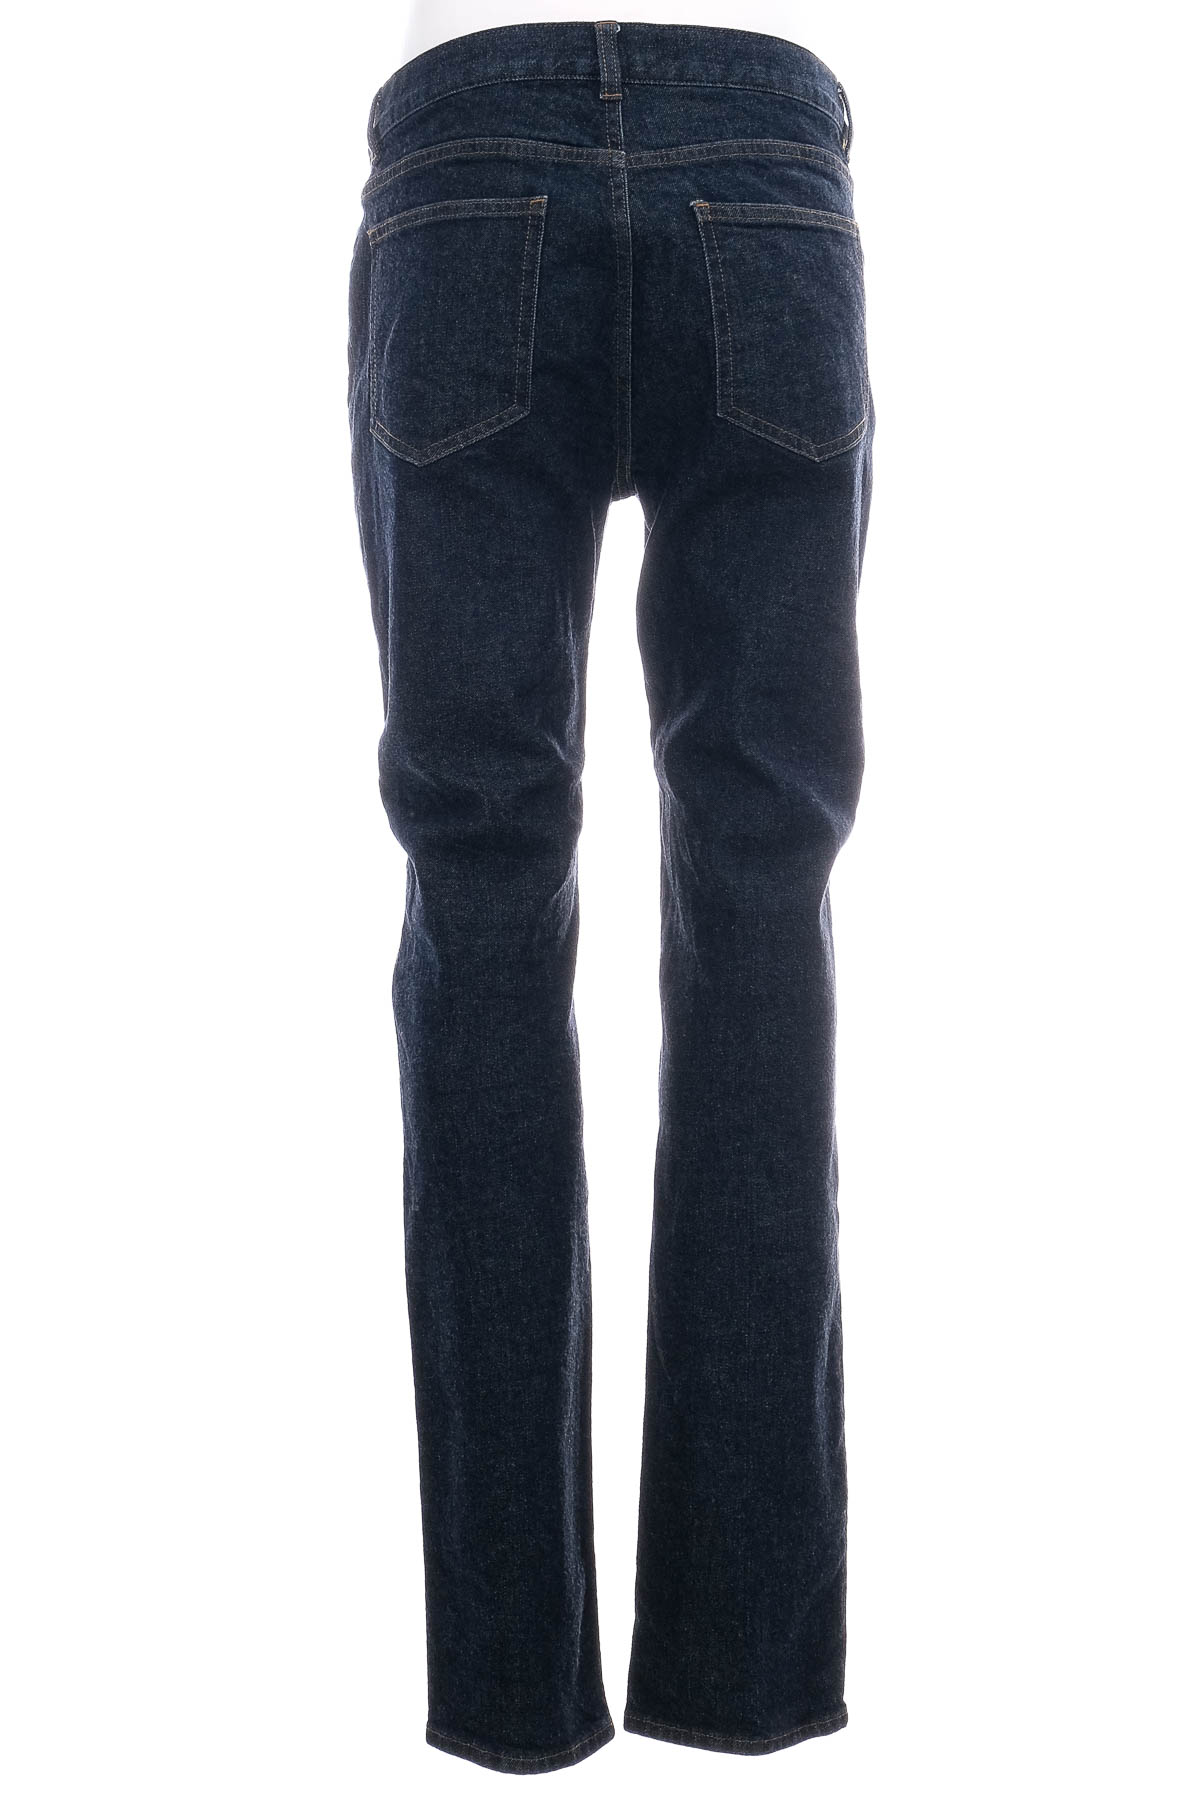 Jeans pentru bărbăți - ARKET - 1